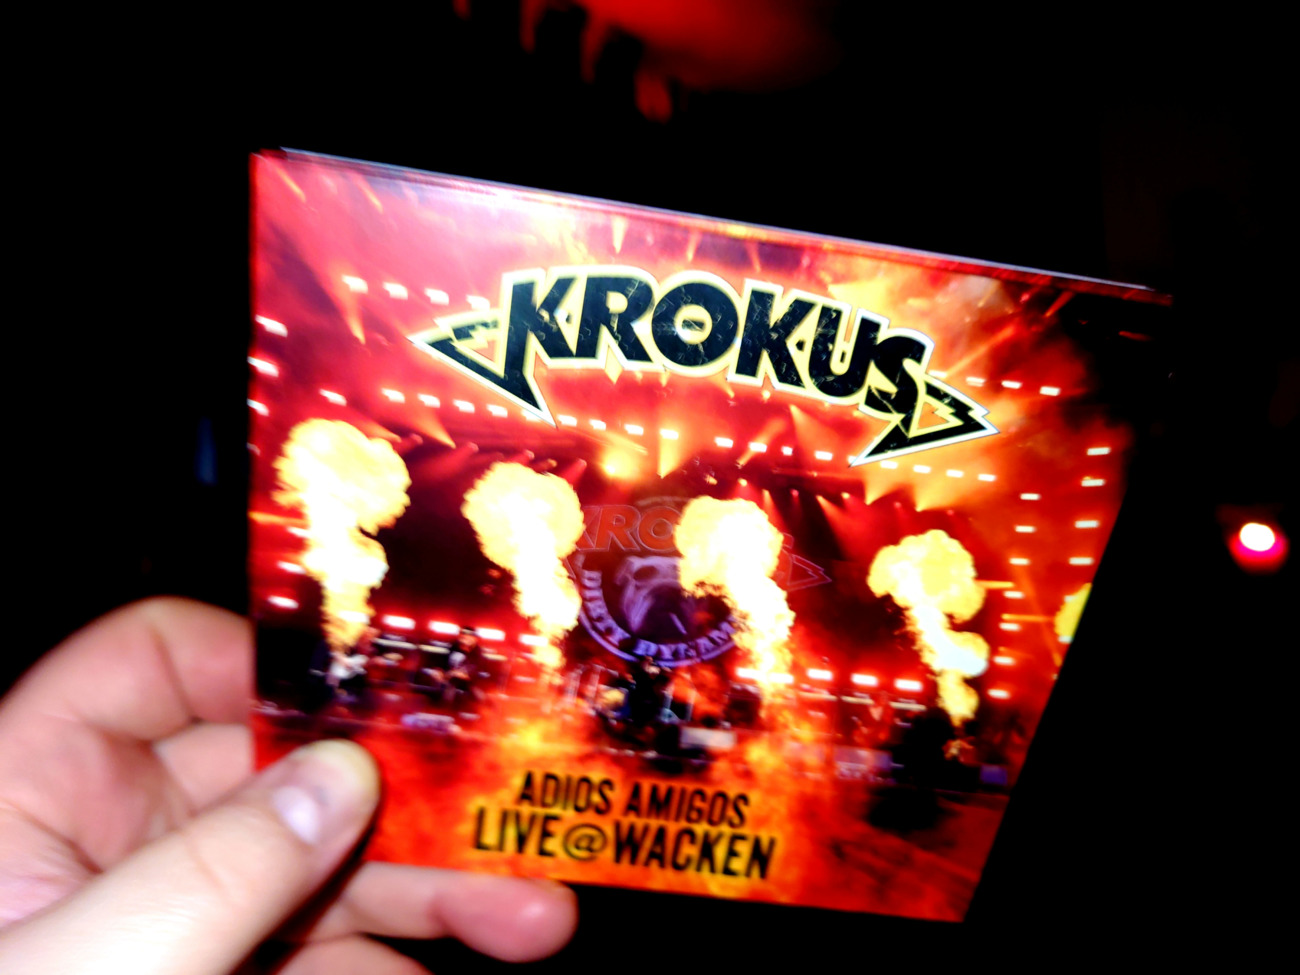 KROKUS: Neues Live Album